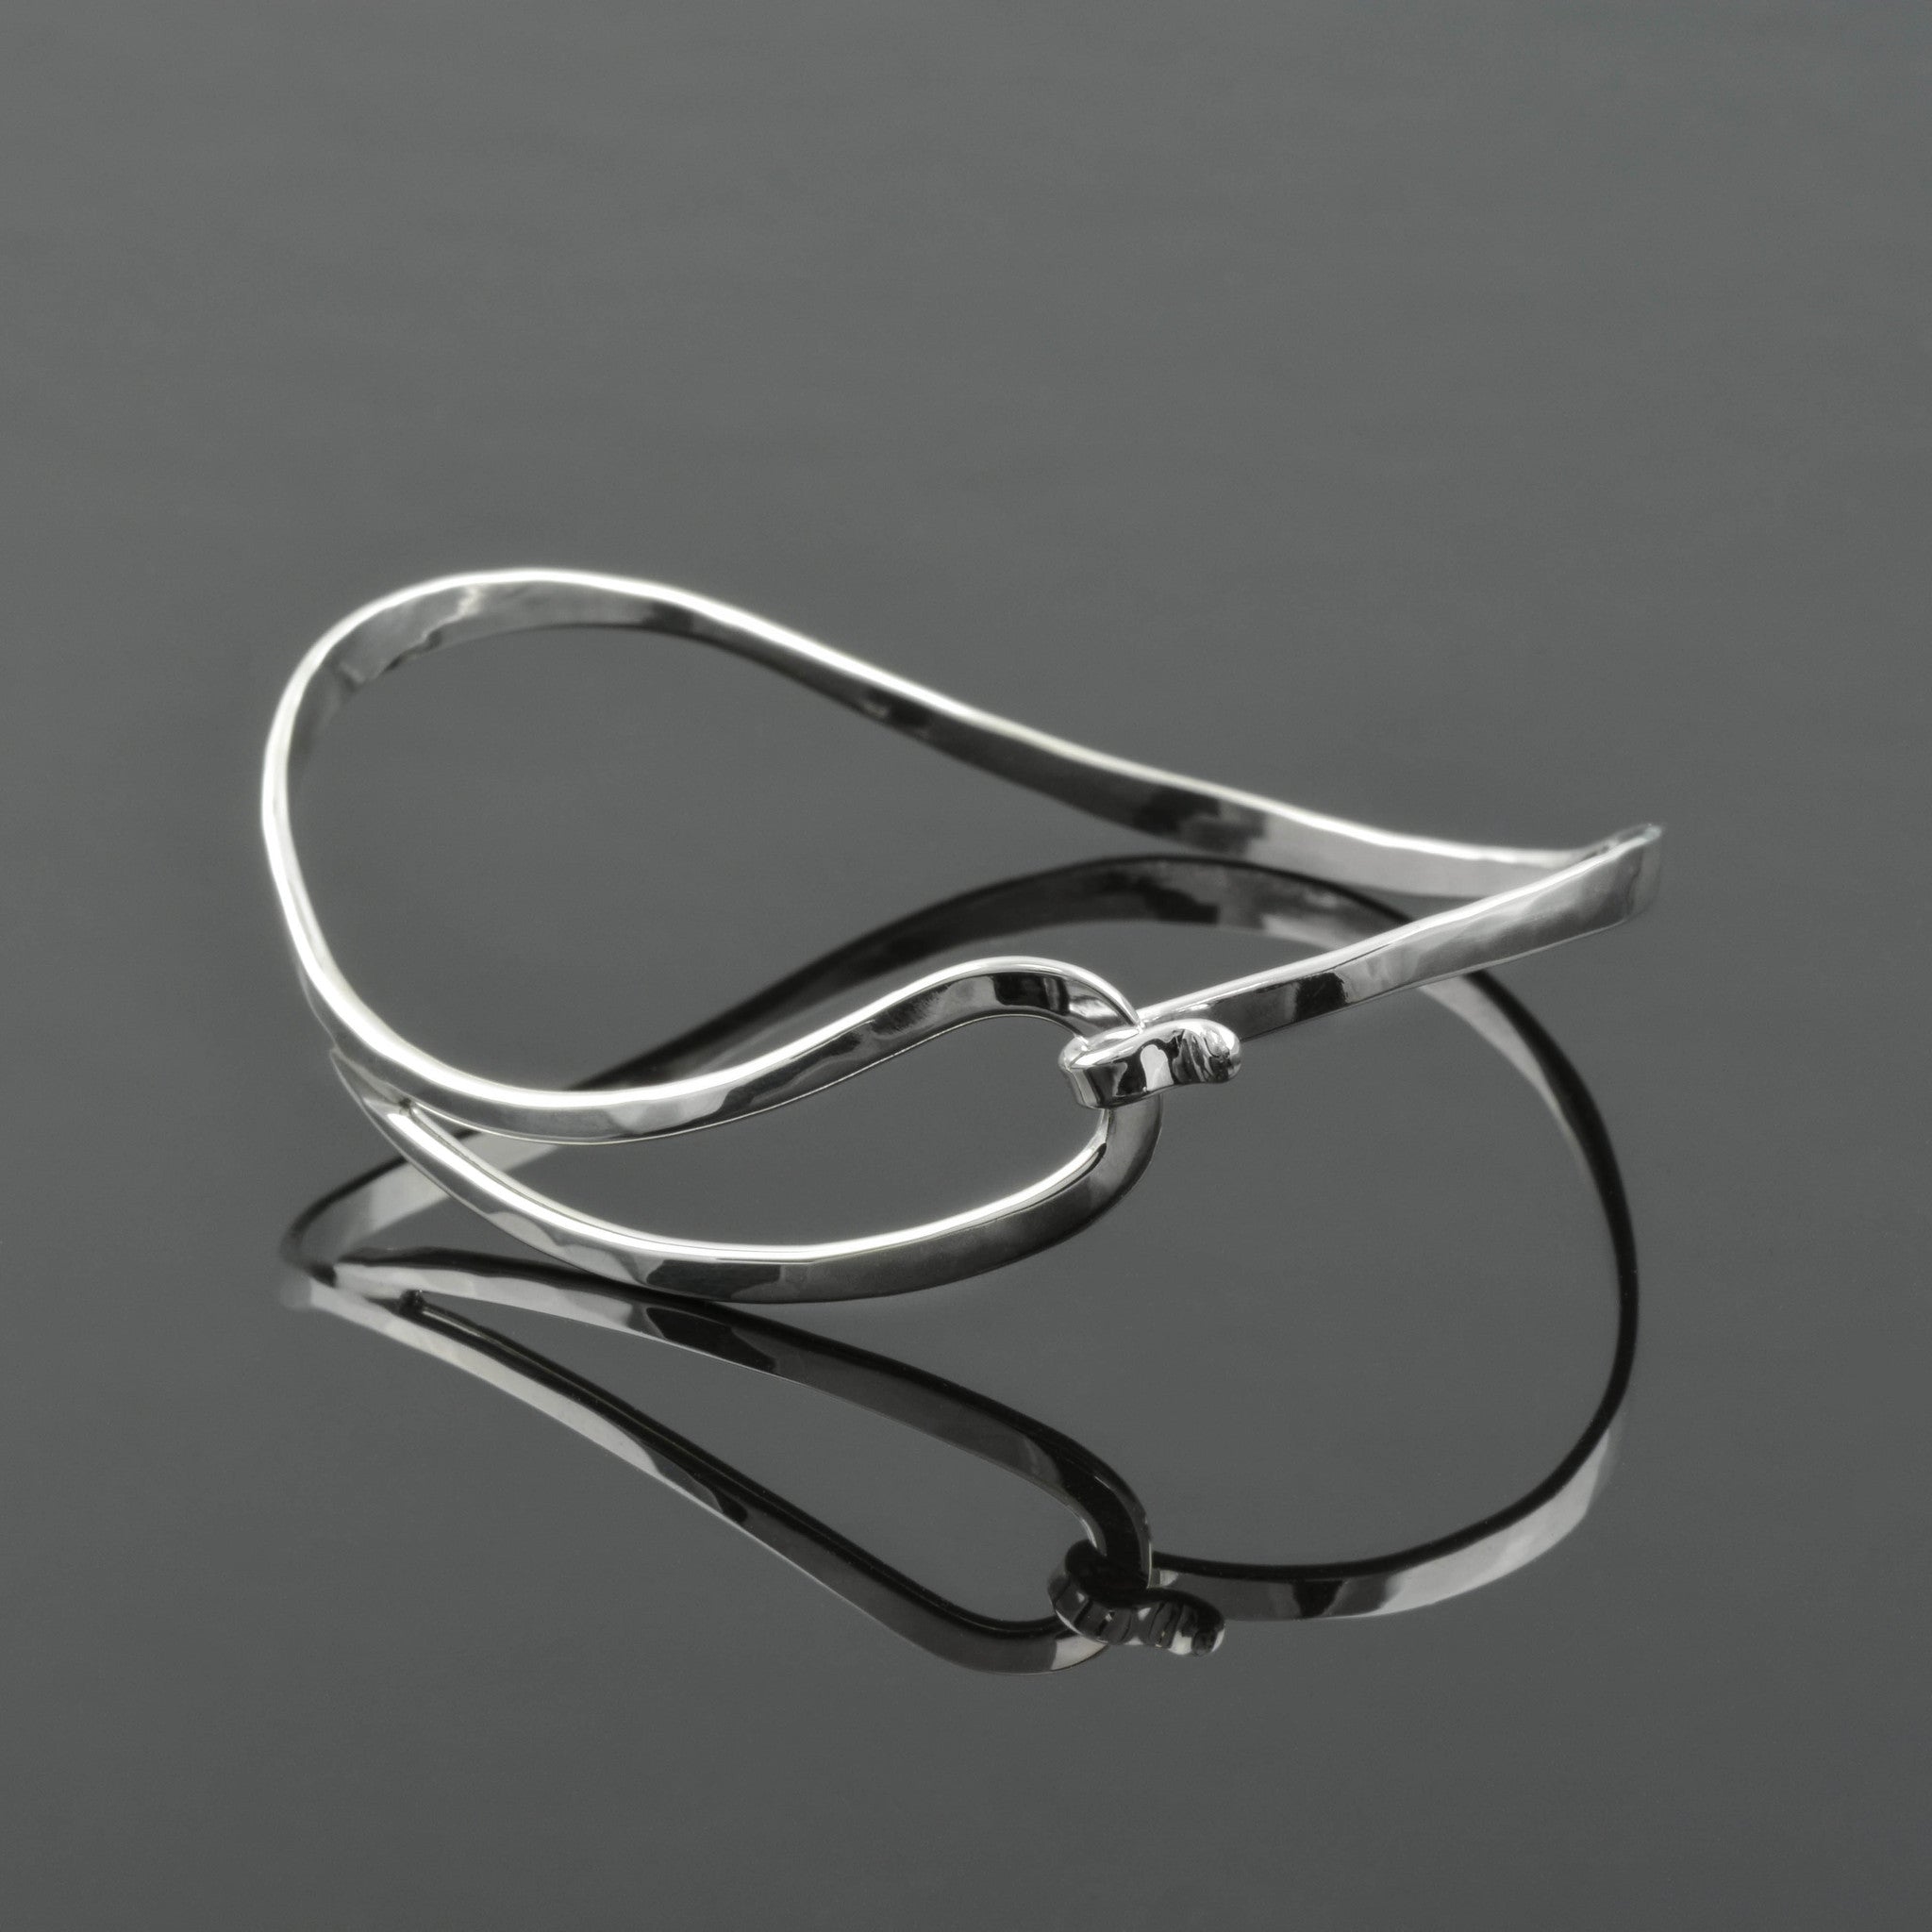 Handmade Loop Swirl Bracelet by Tom Kruskal